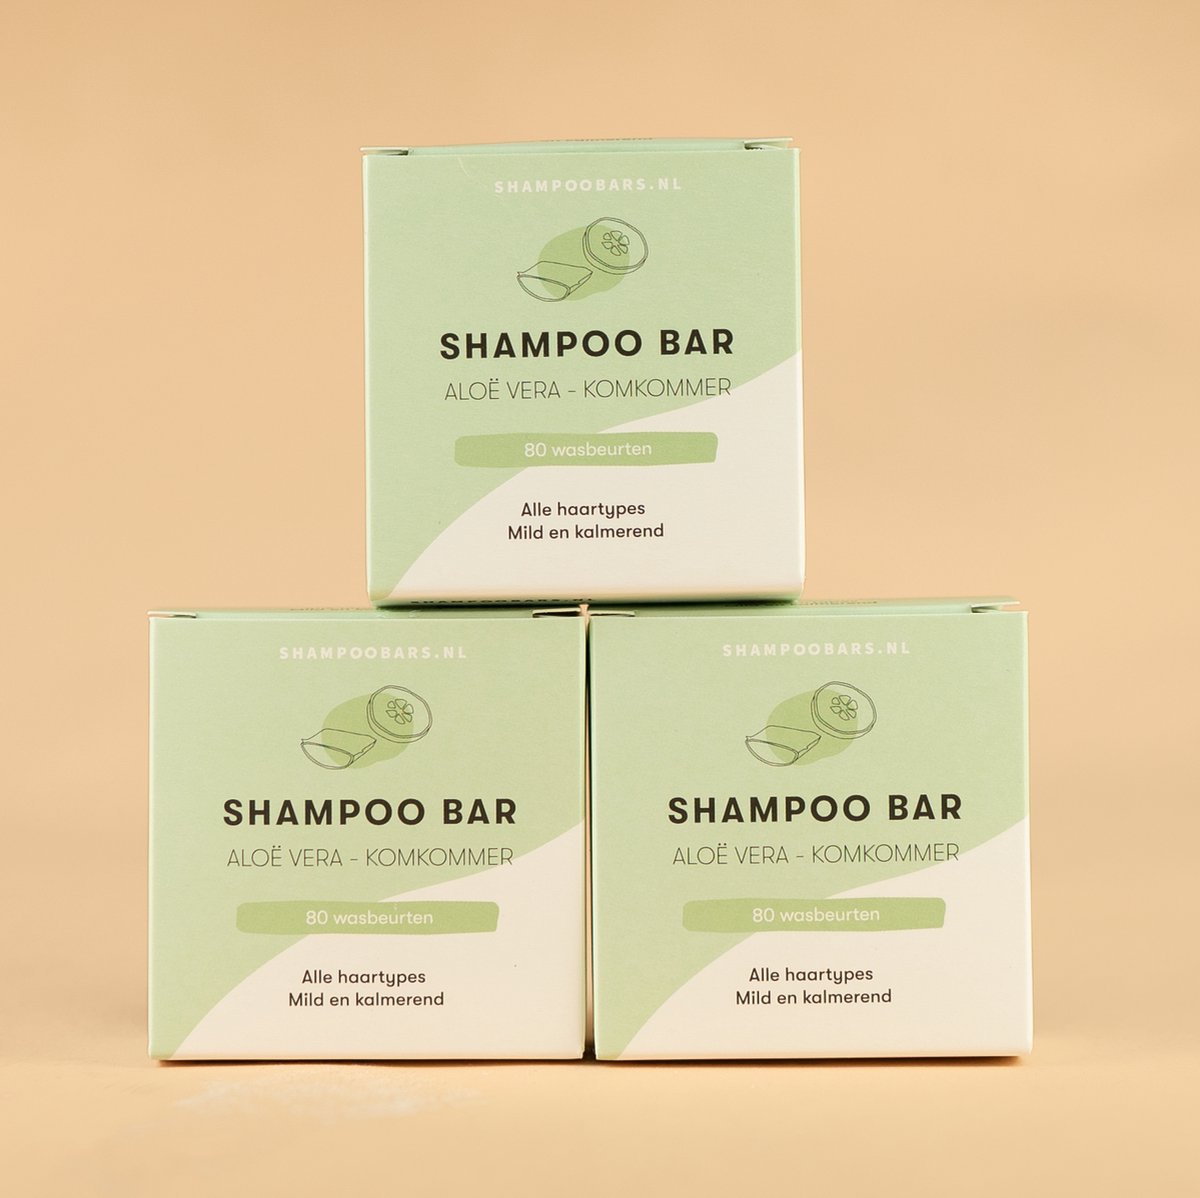 3x Shampoo Bar Aloë Vera bundel | Handgemaakt in Nederland | 100% biologisch afbreekbare verpakking